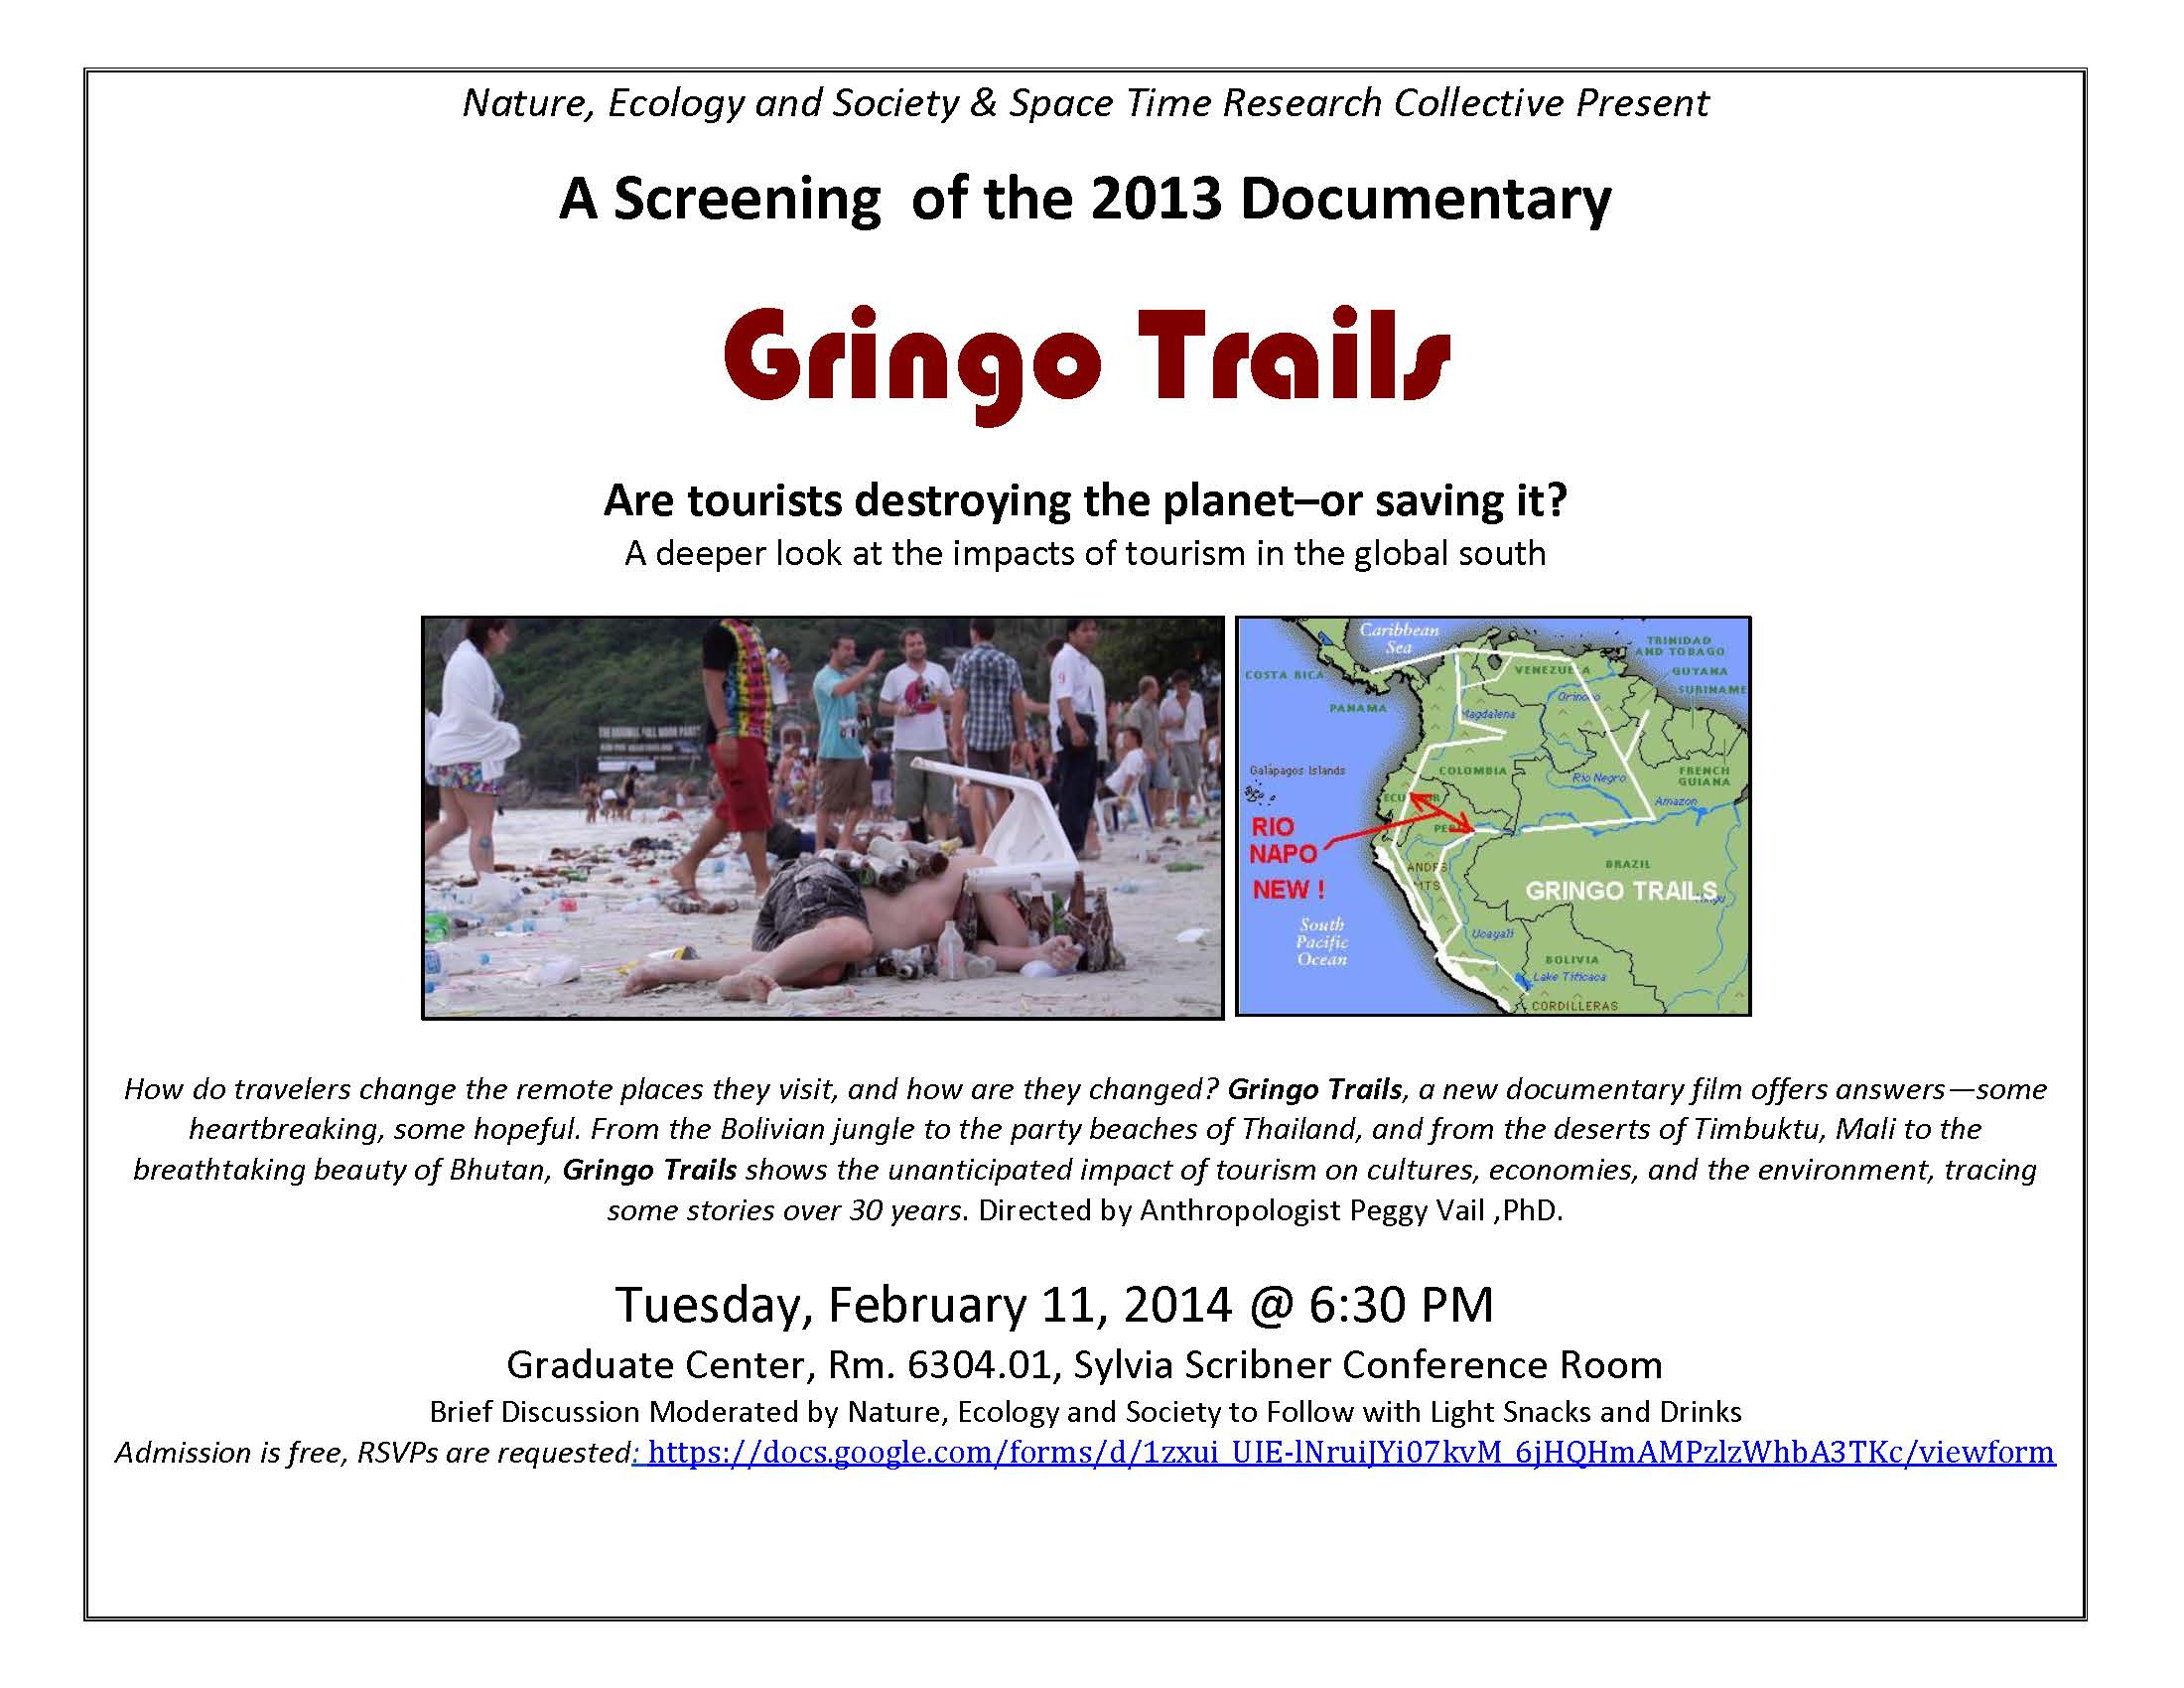 Flyer Gringo Trails Screening 2.11.14_sf